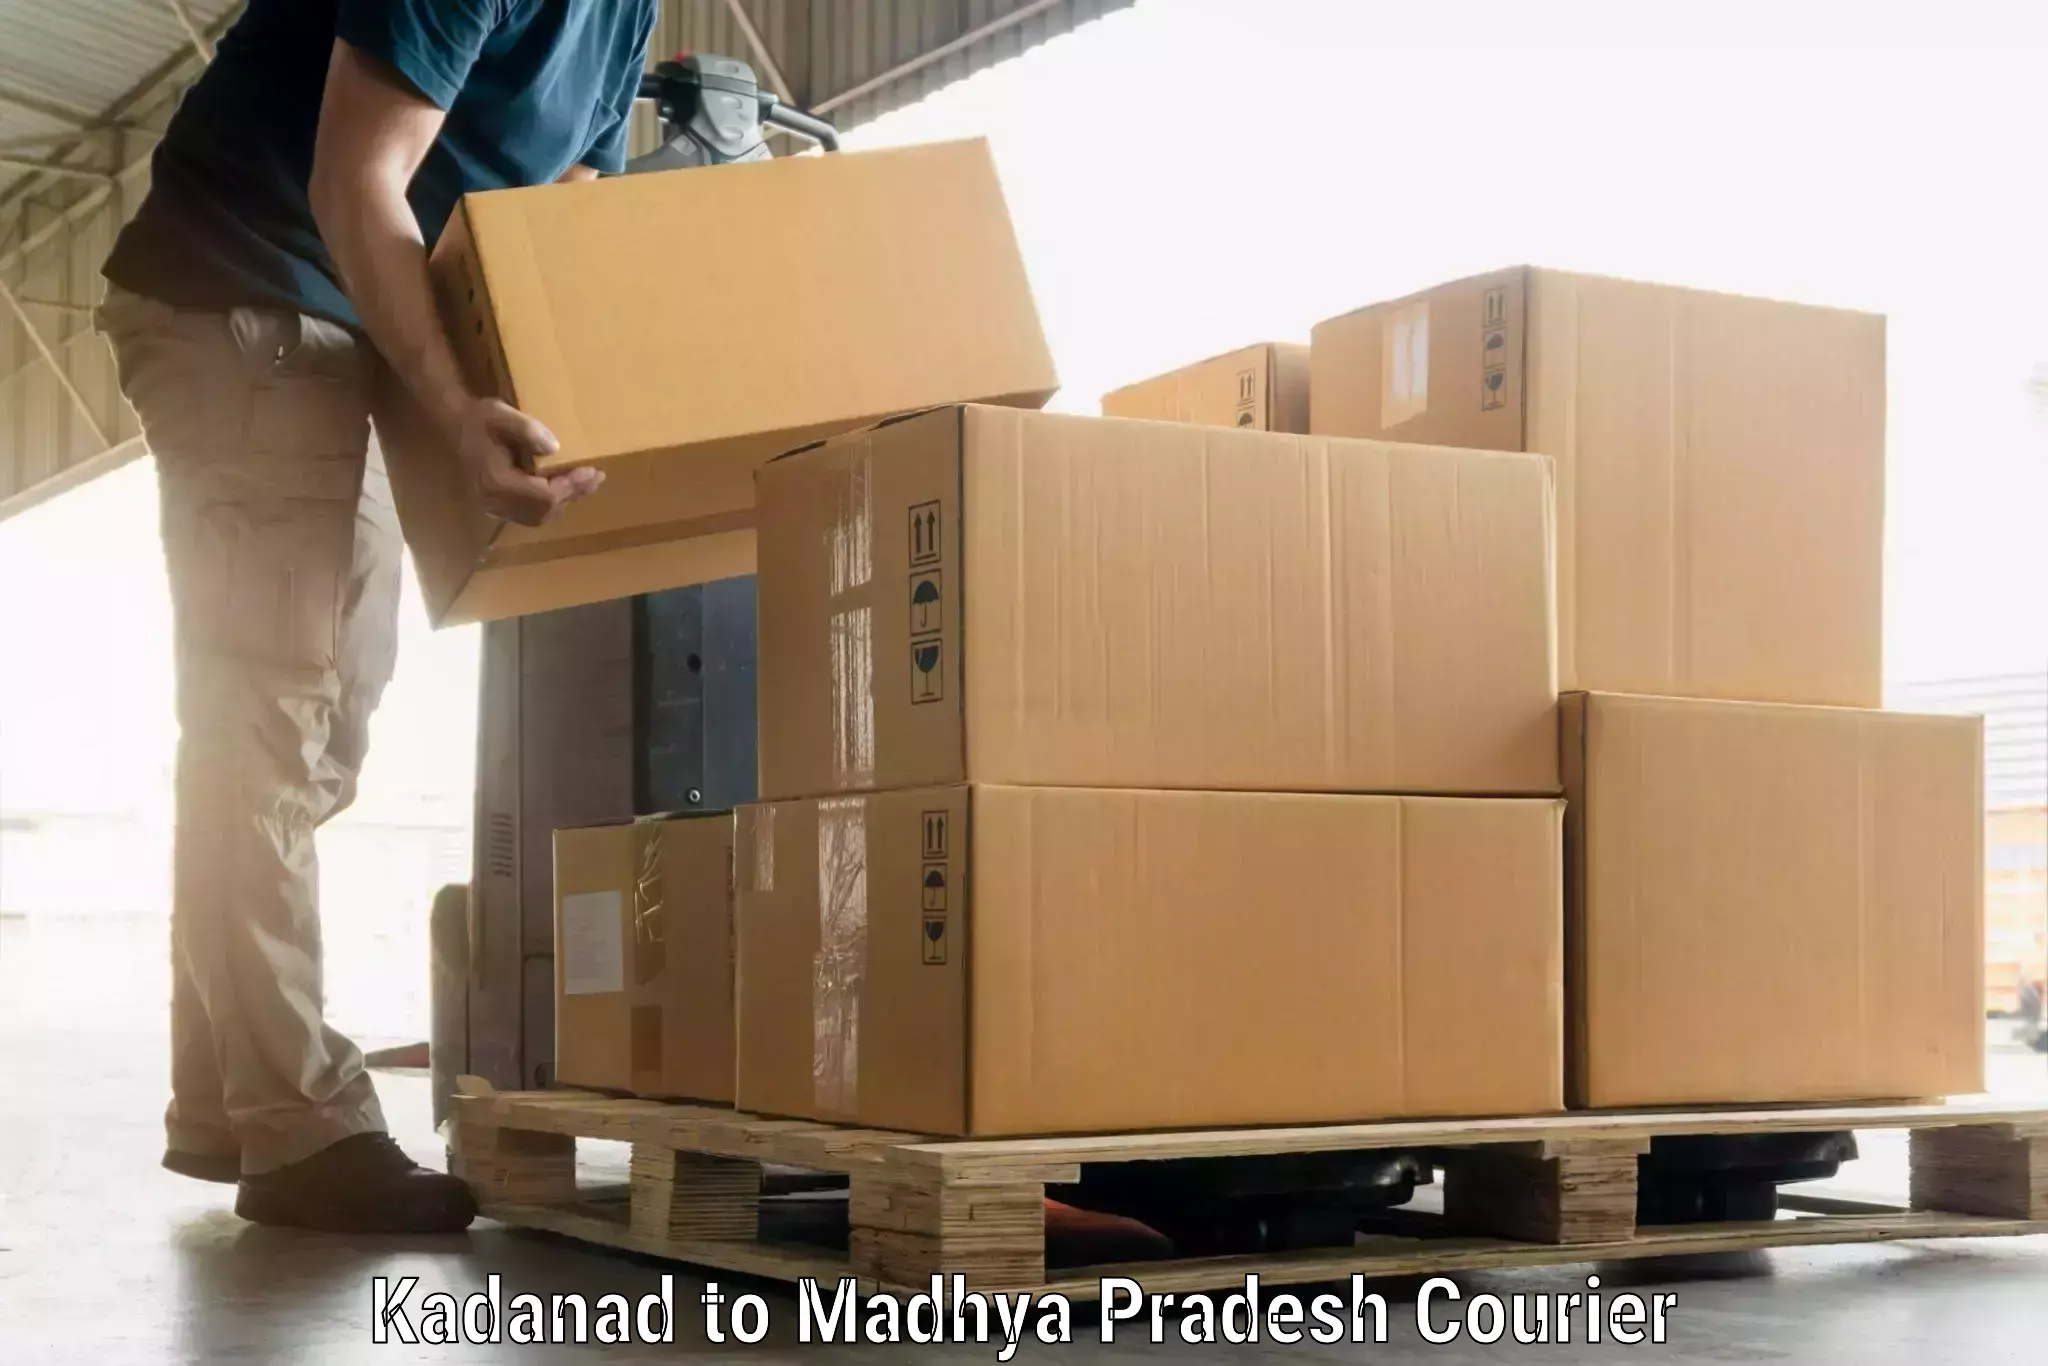 Luggage shipping specialists Kadanad to Garh Rewa